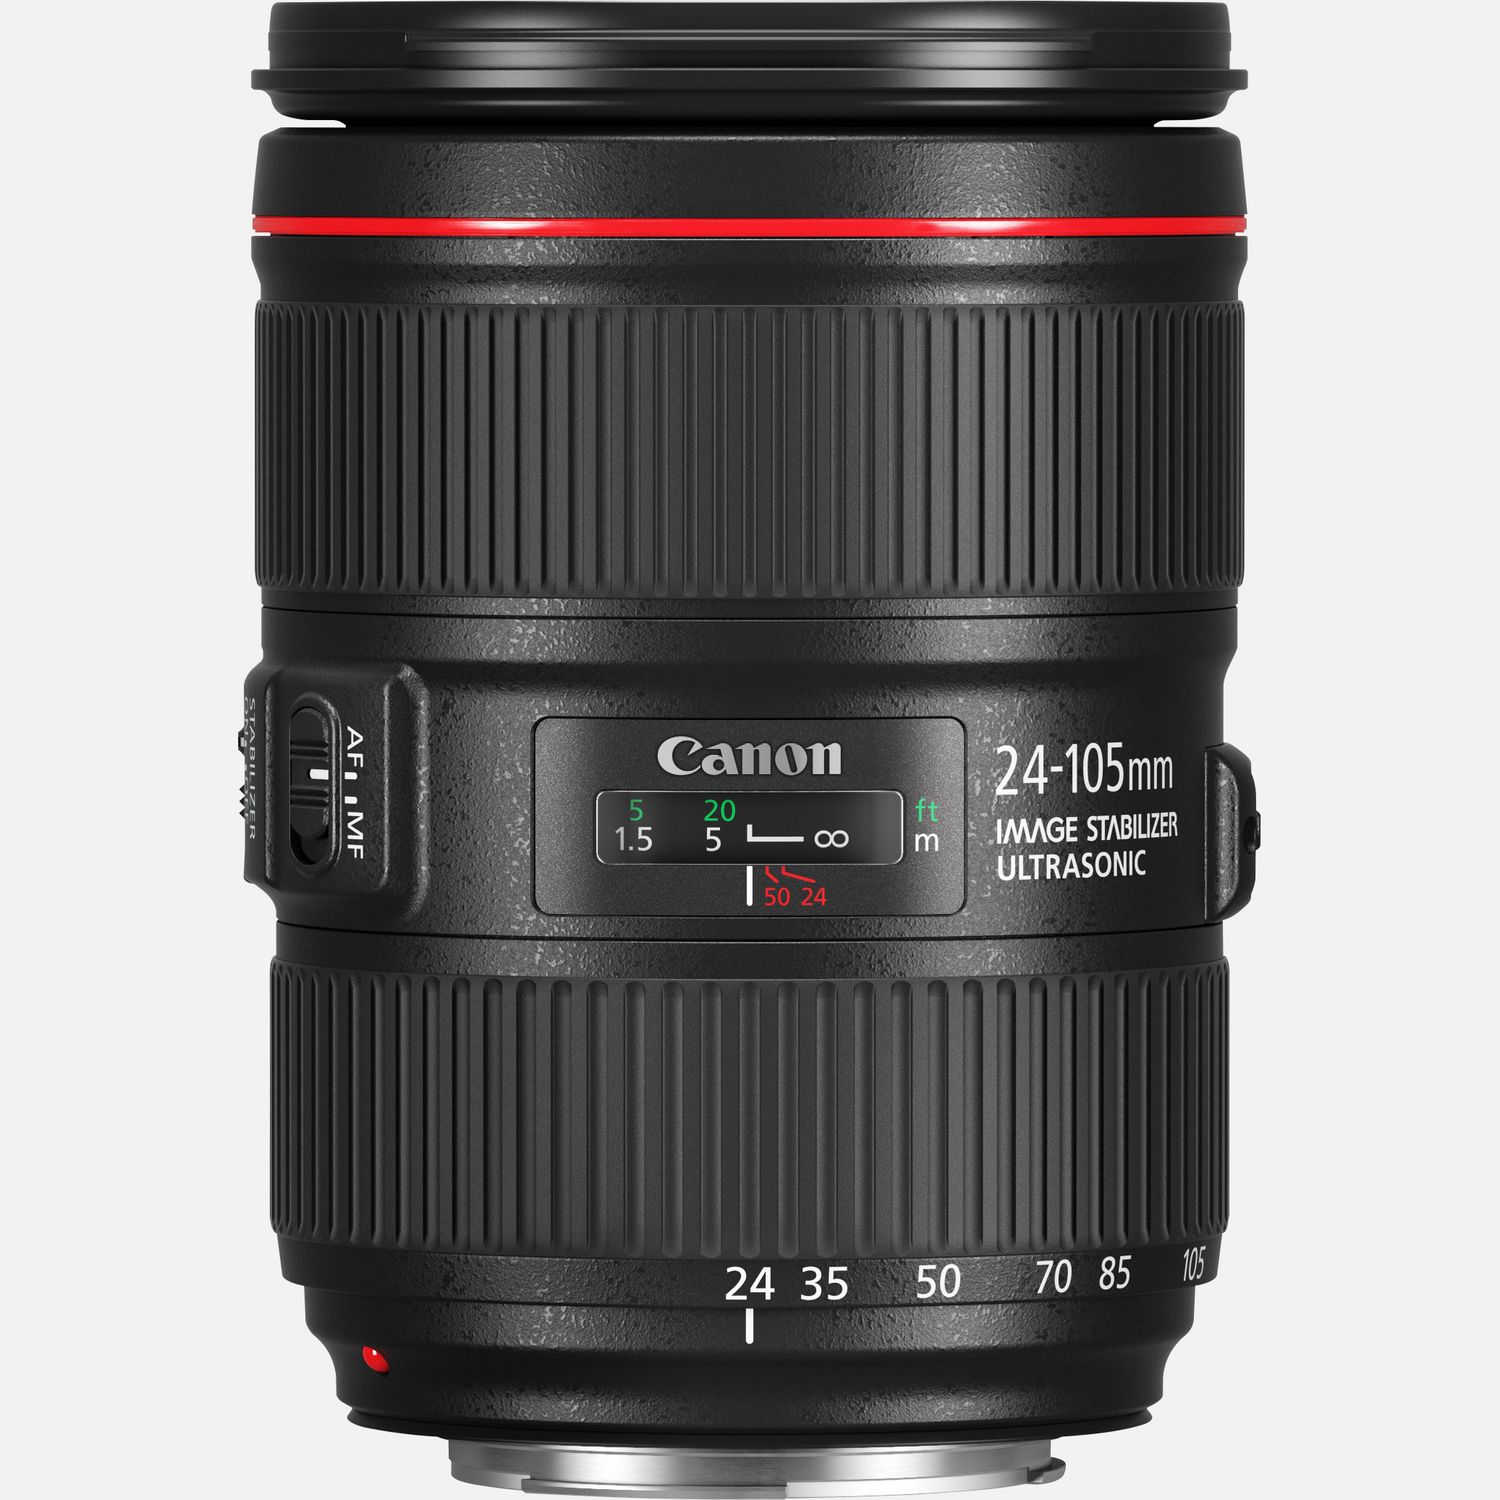 Image of Obiettivo Canon EF 24-105mm f/4L IS II USM